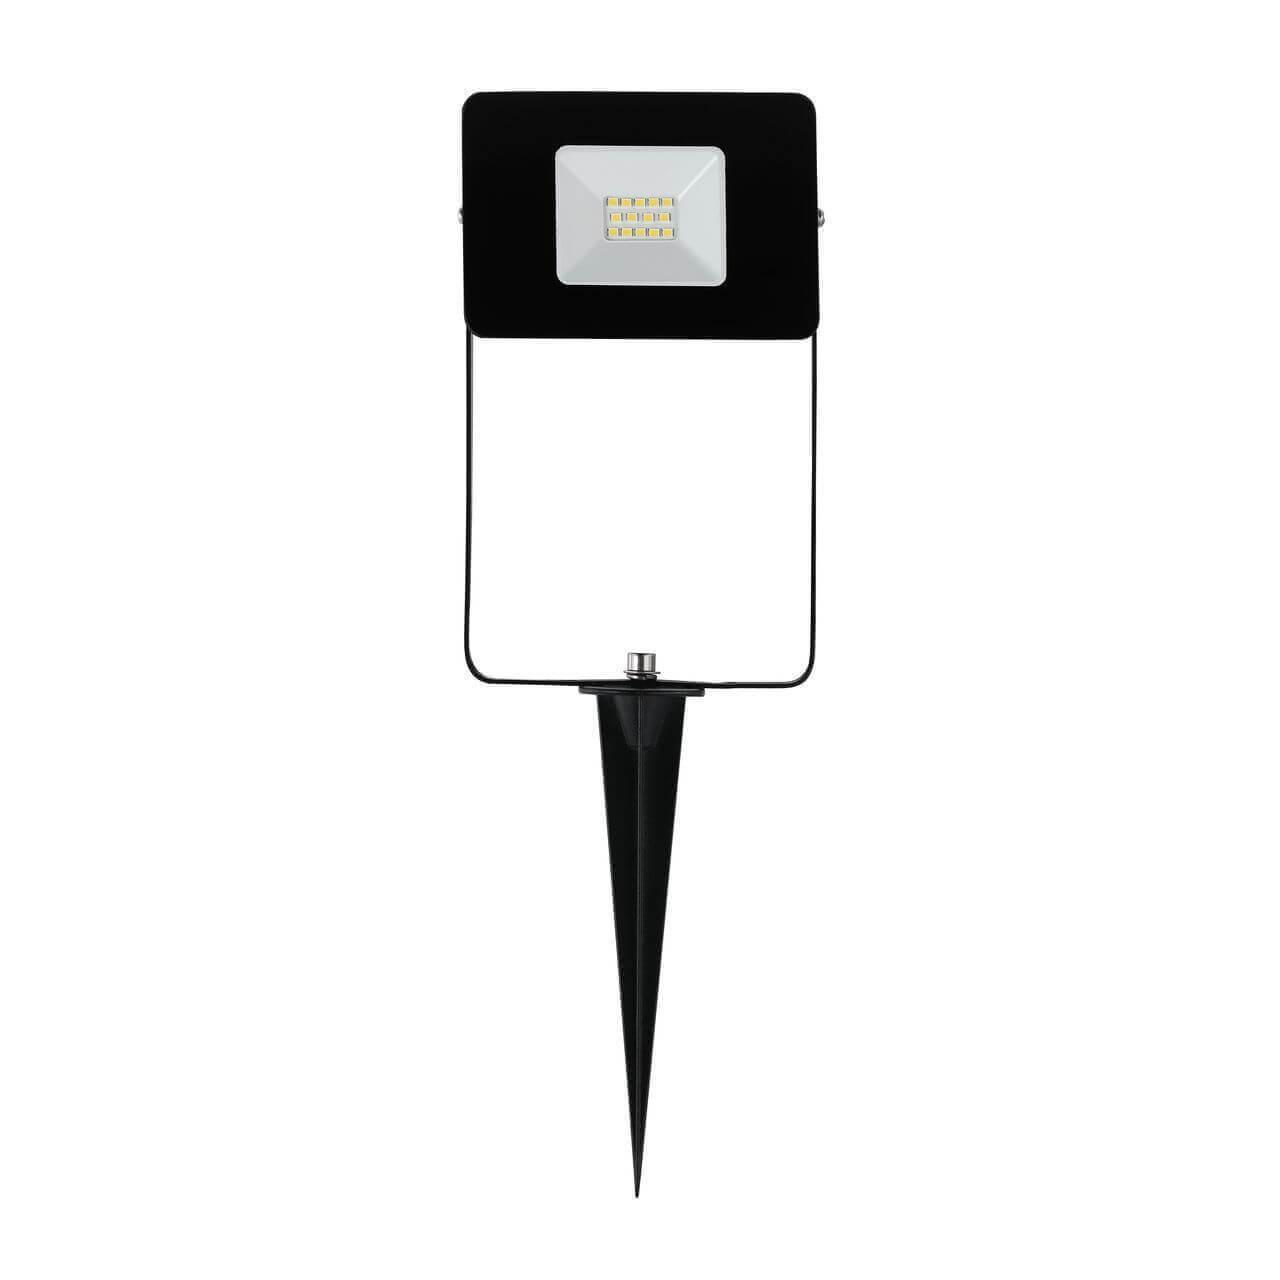 Ландшафтный светодиодный светильник Eglo Faedo 4 97471 светильник в грунт inspire praia на солнечных батареях свет ной rgb ip44 чёрный